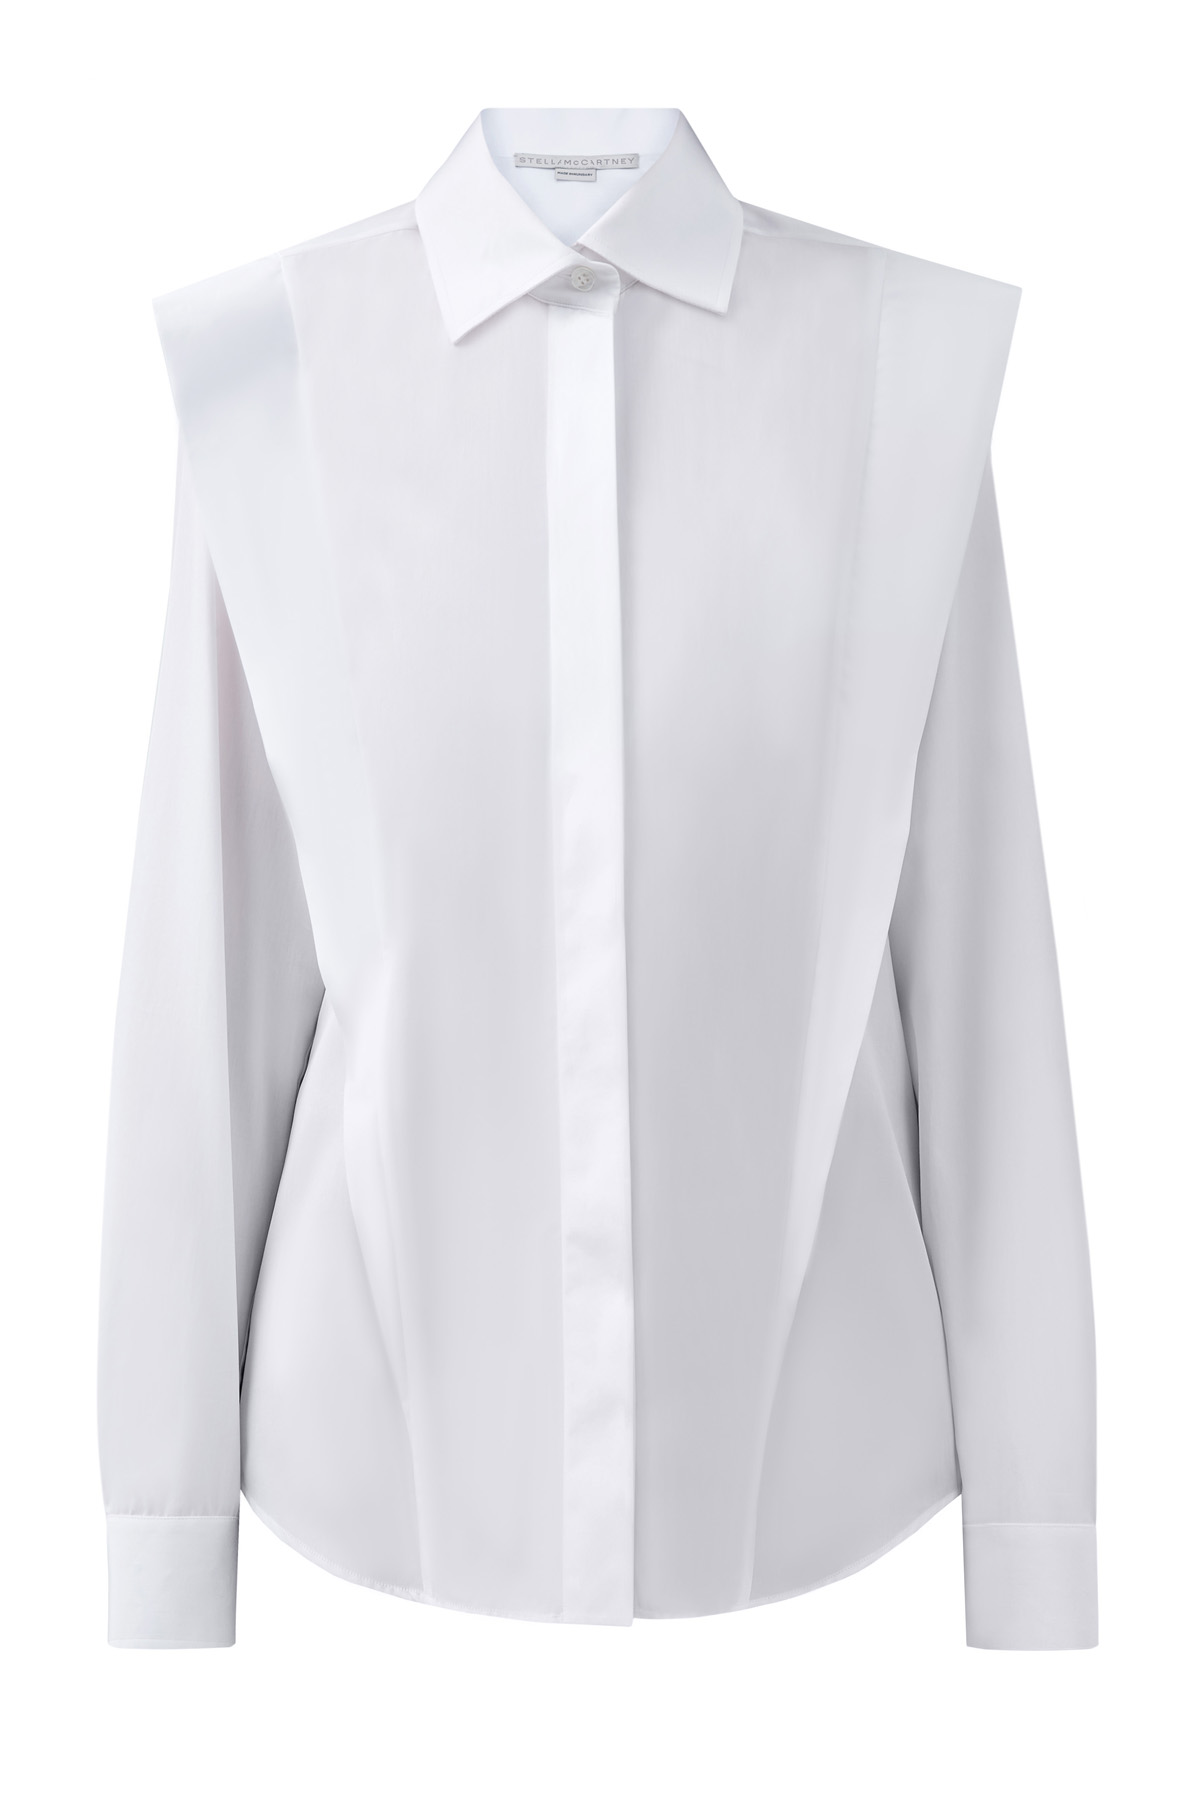 Белая рубашка сложного кроя из поплина STELLA McCARTNEY, цвет белый, размер XS;S;M;2XS - фото 1